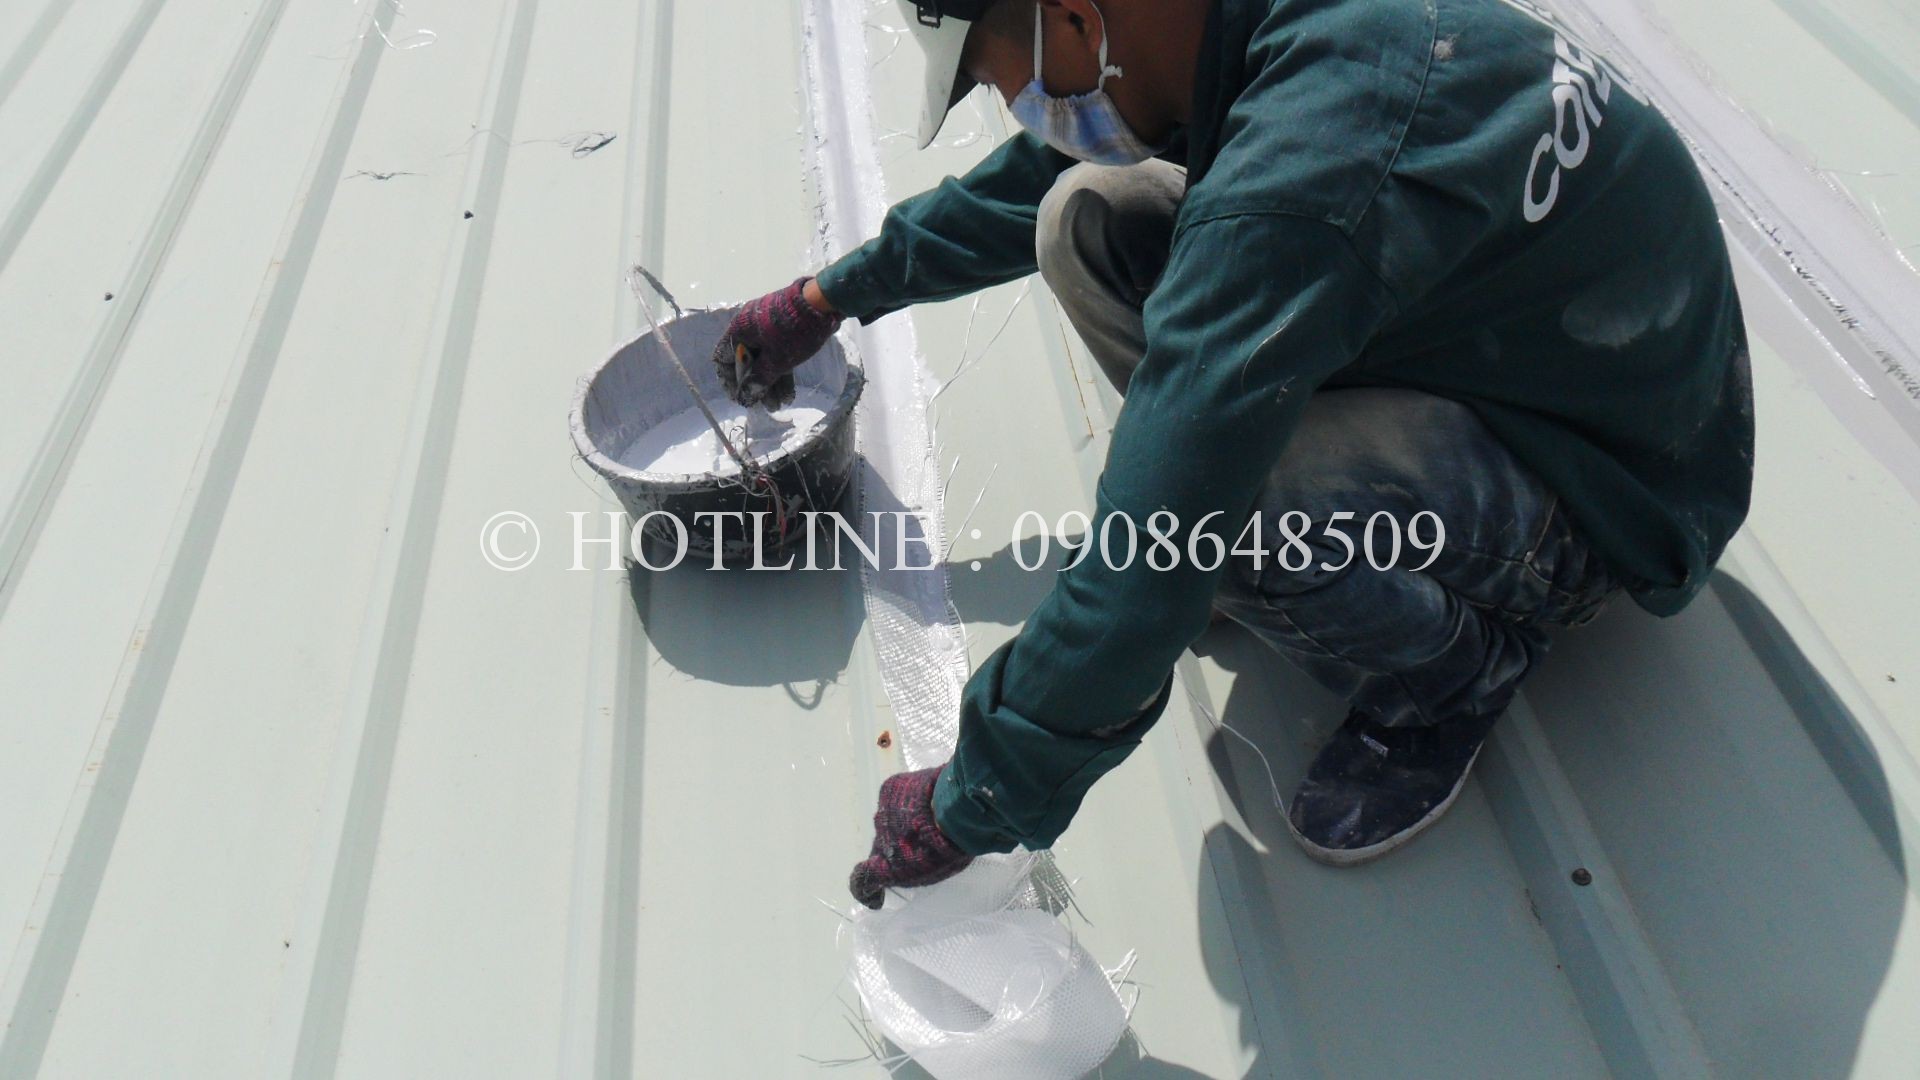 Dịch vụ chống thấm dột nhà tại tphcm